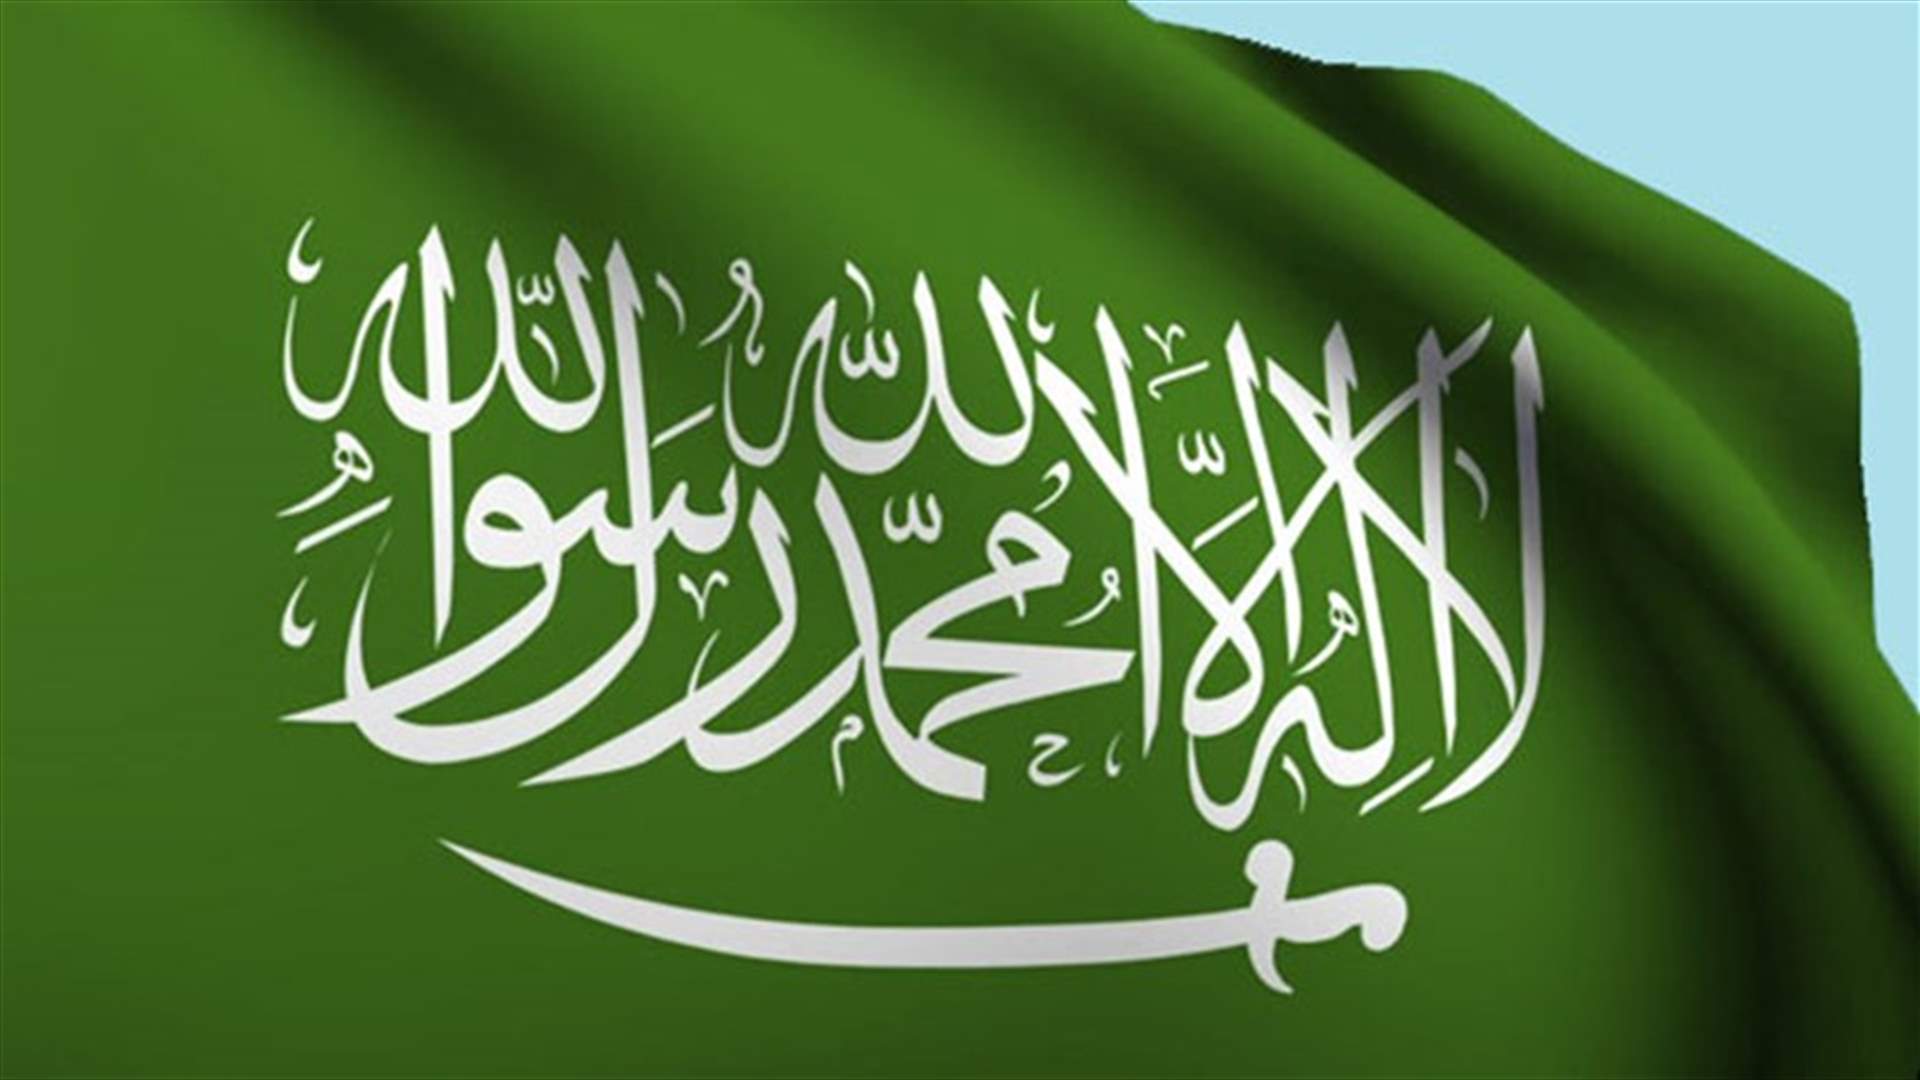 السعودية ترفص اتهامات امنستي وهيومن رايتس وواتش